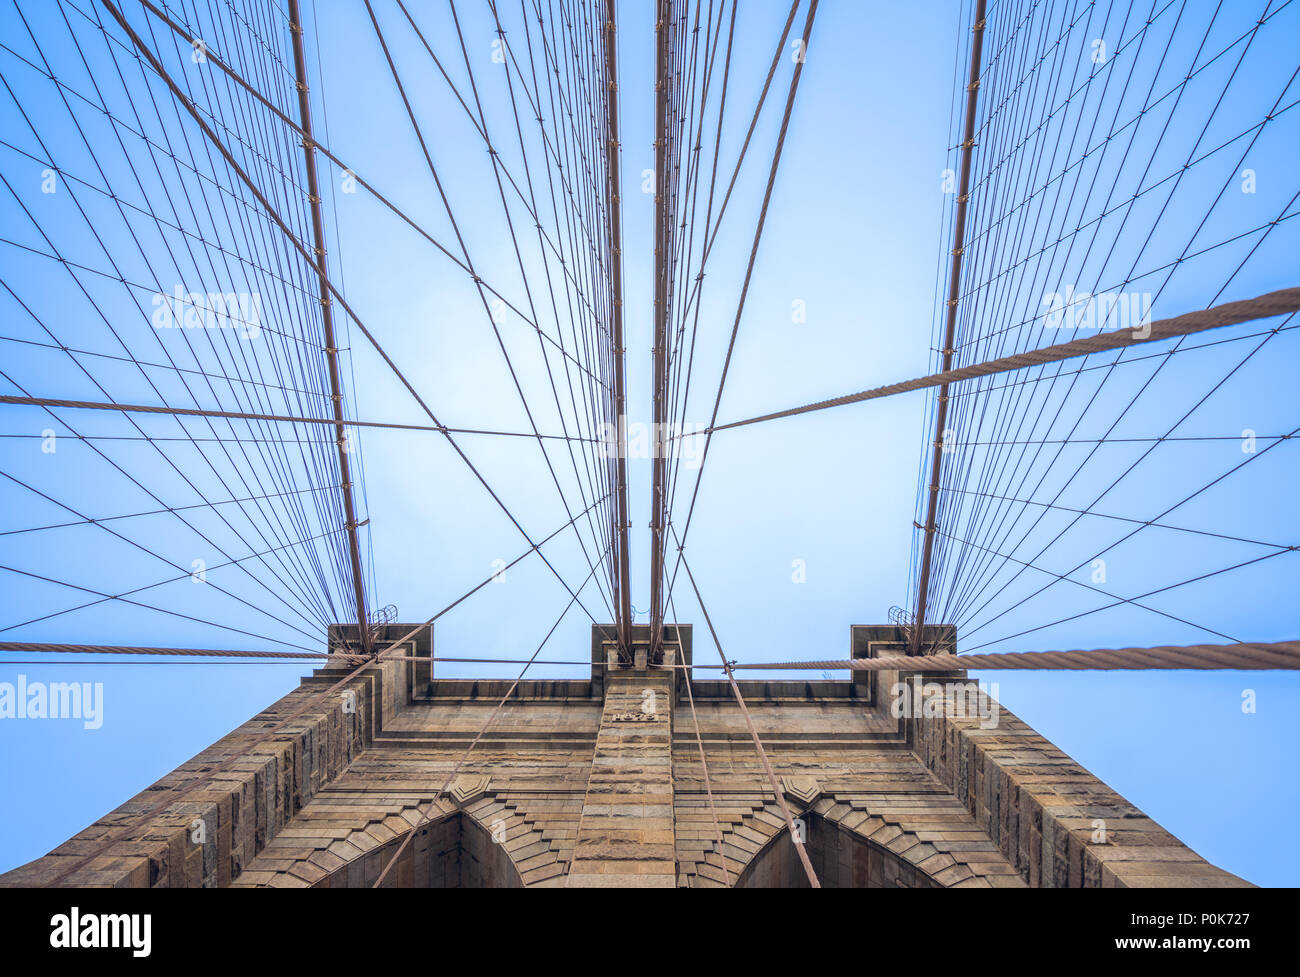 Suchen bis zu einem Pfeiler der Brooklyn Bridge in New York City und auf das Muster der gespannten Kabel, Unterstützung der Brücke Stockfoto